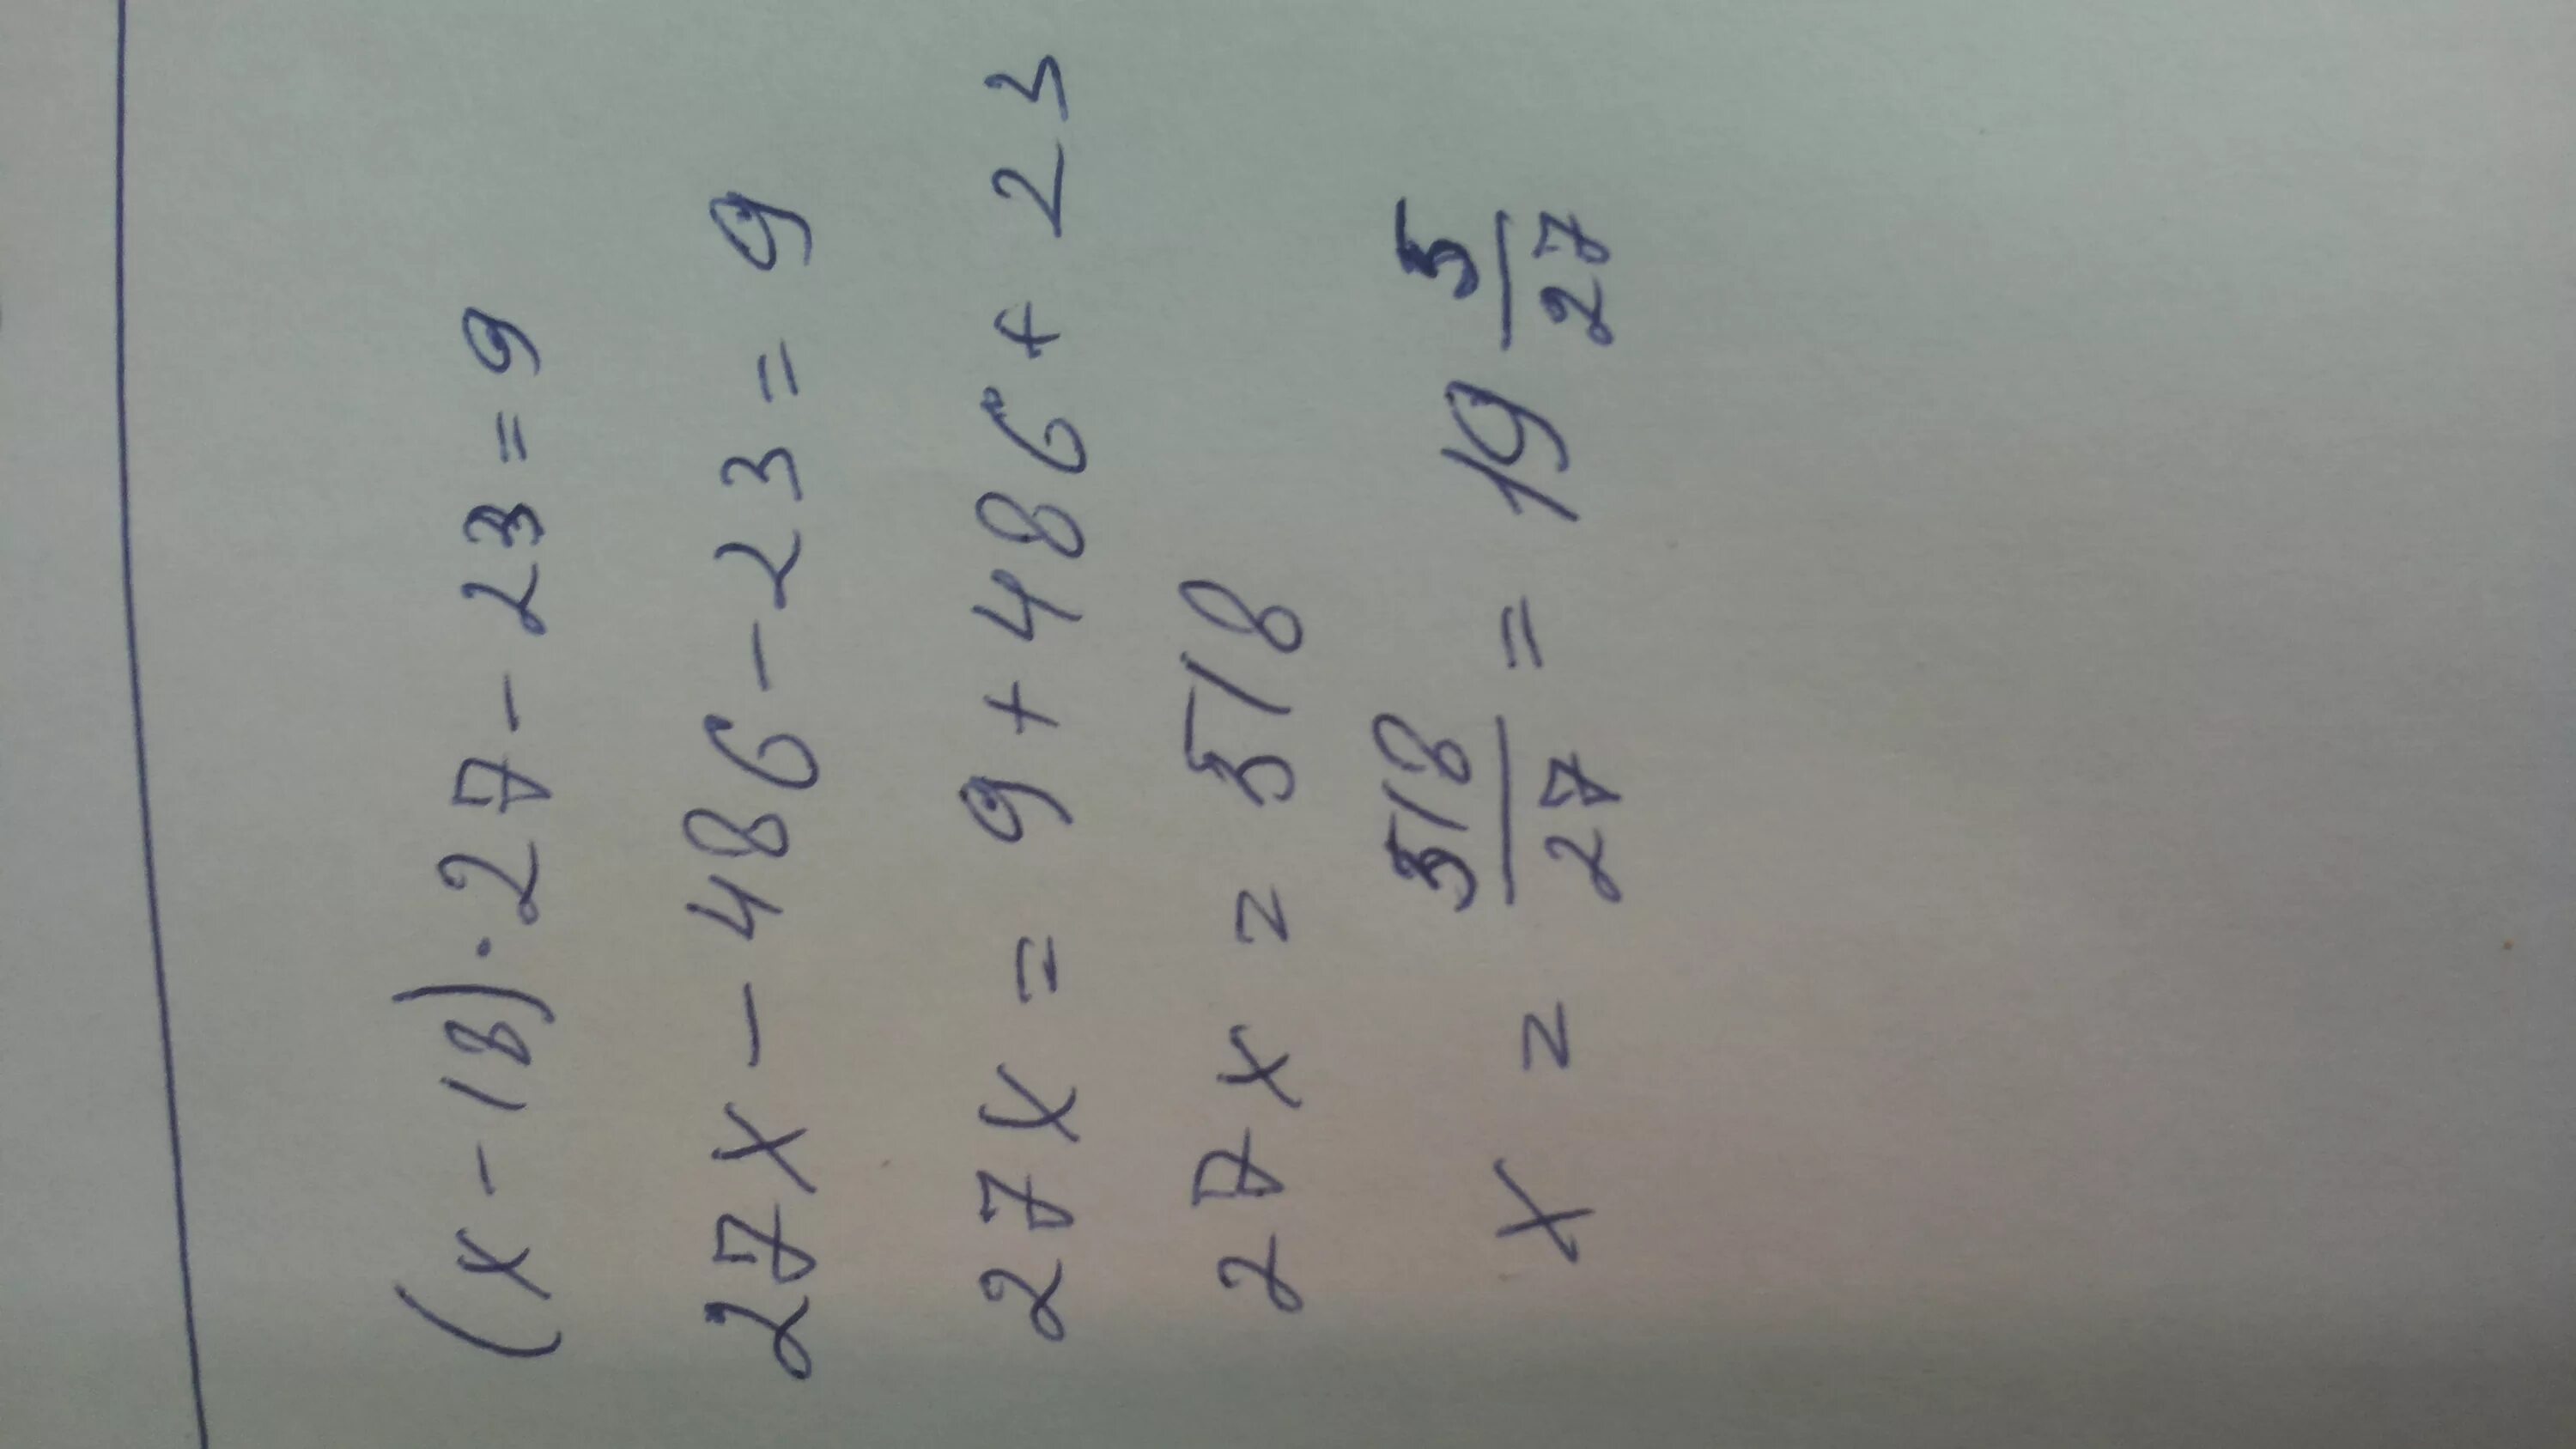 1 18 27 ответ. (Х-18)+27-23=9. Йцукенгшщзхъфывапролджэячсмитьбюё что это такое. Х – 87) – 27 = 3. (X-23)+27=87 решение.